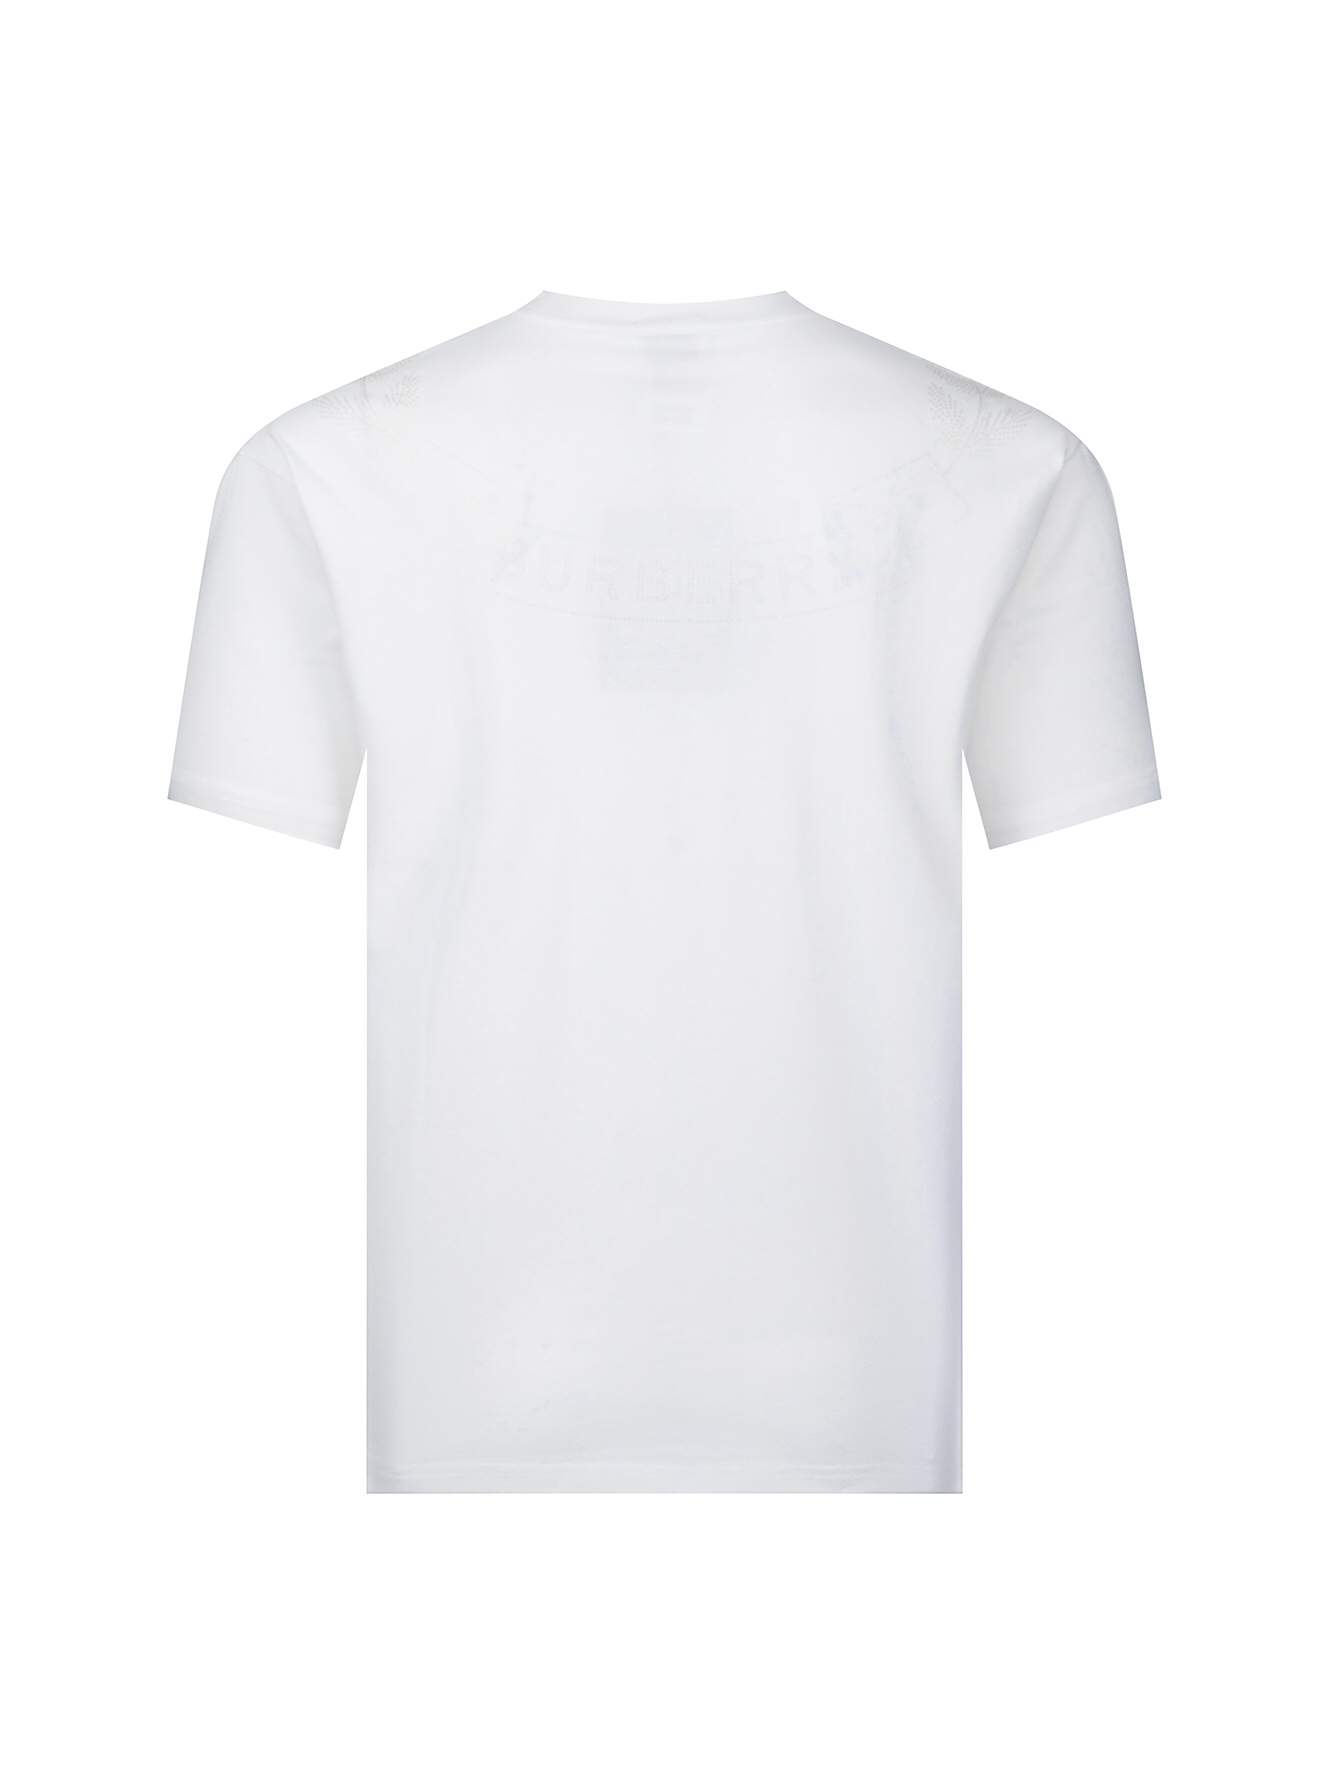 バーバリー偽物スーパーコピー半袖Tシャツコットンホワイト柔らかいファッション_2